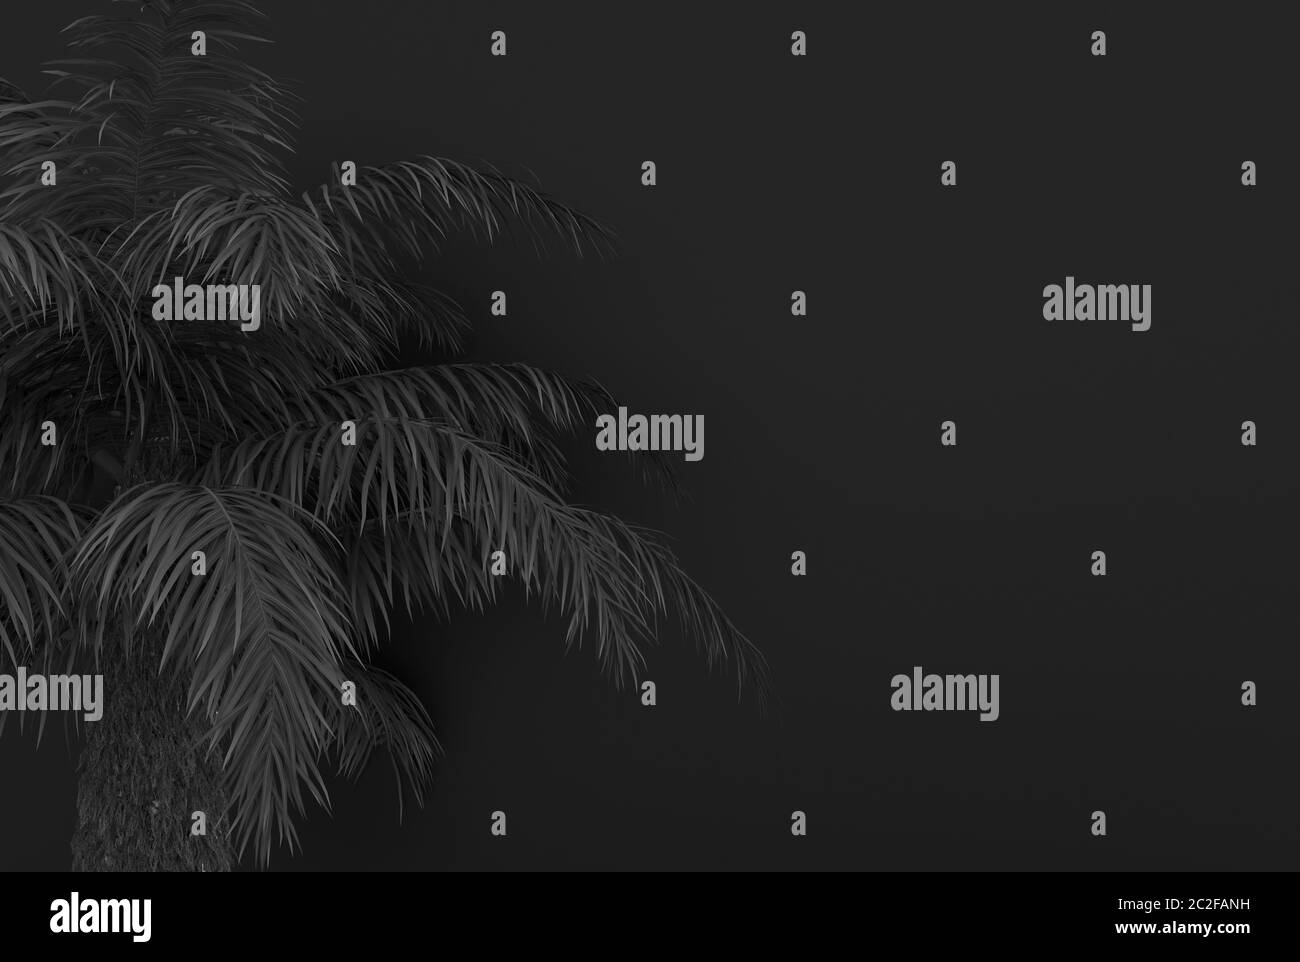 Albero di palma con foglie di palma nere su sfondo nero. Fogliame nero monocromatico. Illustrazione concettuale creativa con spazio di copia. Rendering 3D. Foto Stock